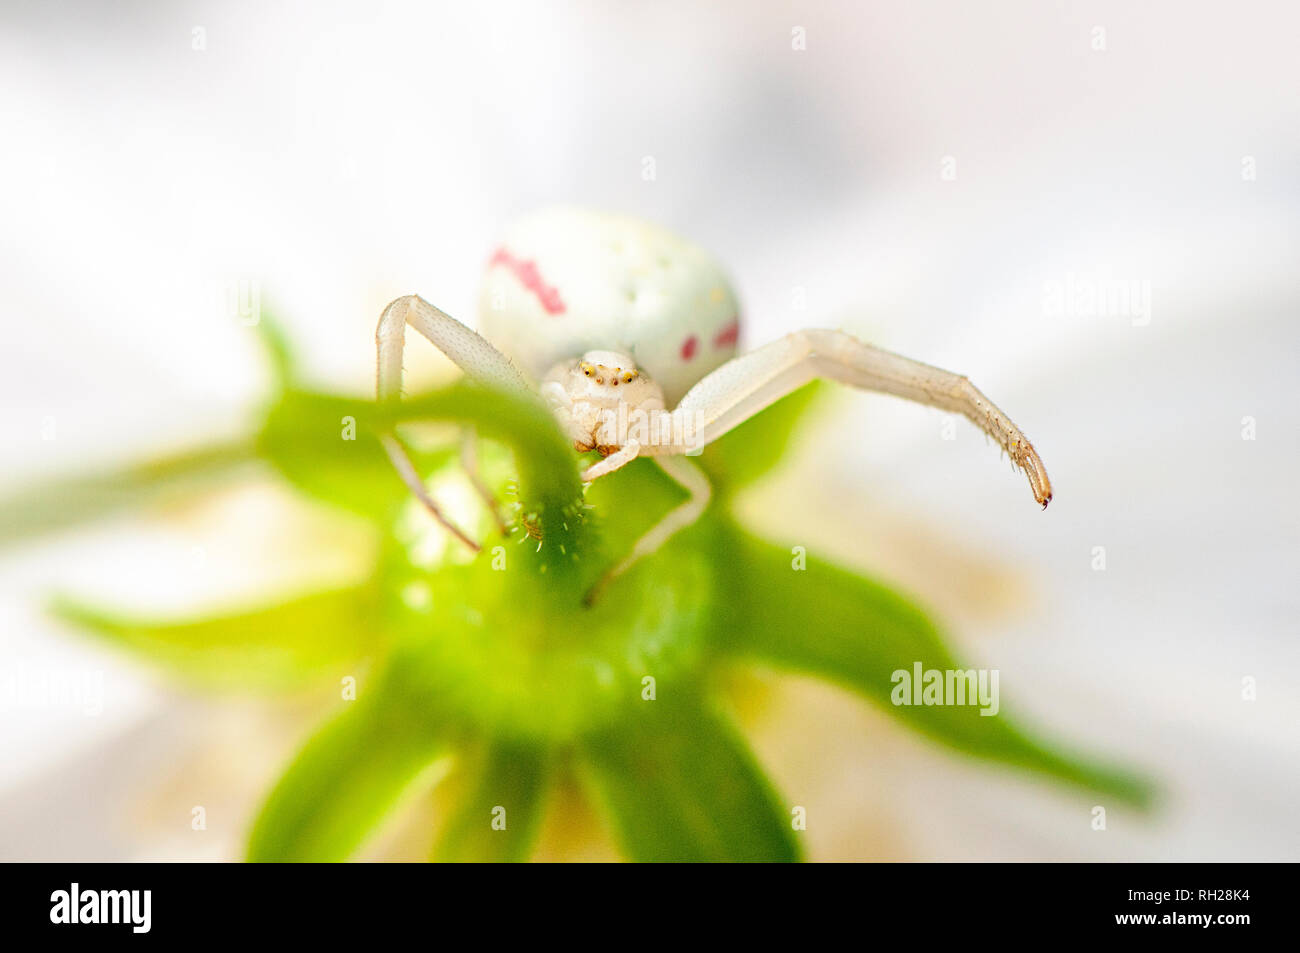 Image en gros plan d'une araignée crabe blanc en attente d'embuscade c'est en dessous d'une proie d'été blanche fleur Cosmos Banque D'Images